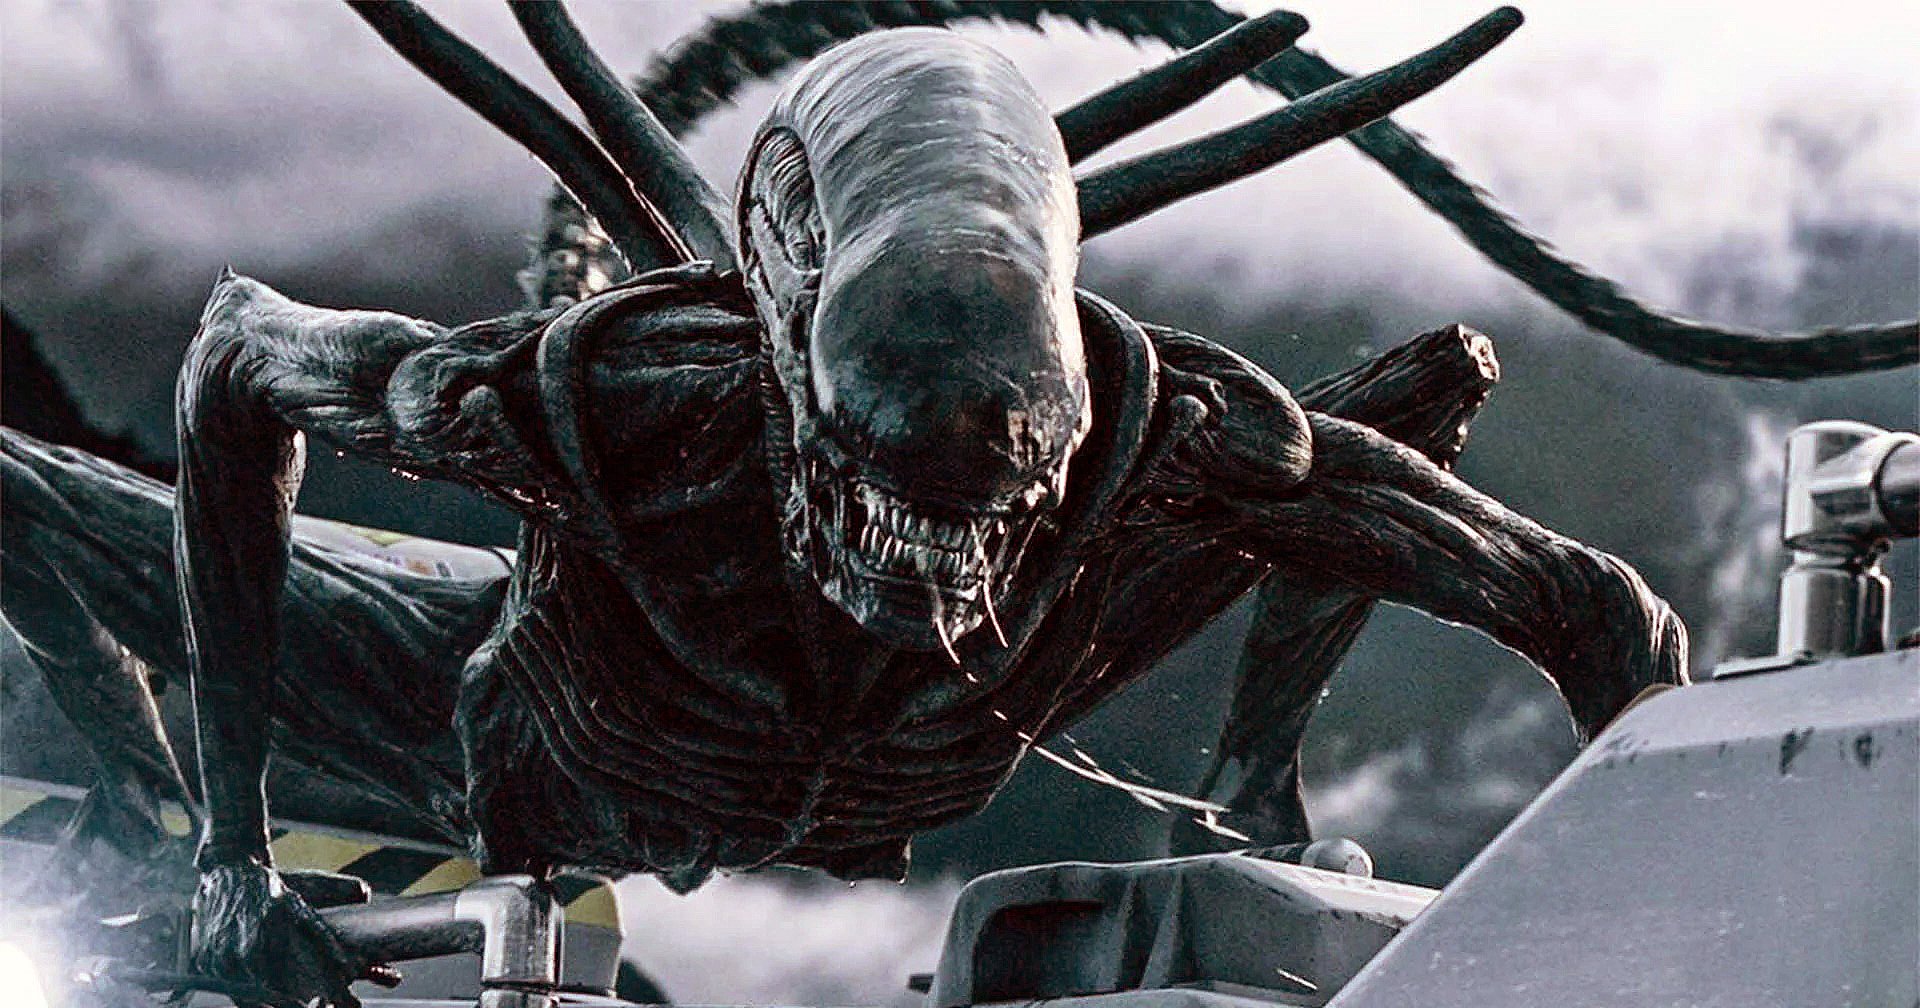 ริดลีย์ สก็อตต์ เดินหน้าสร้าง Alien 5 จะกำกับโดยผู้กำกับ Don’t Breathe